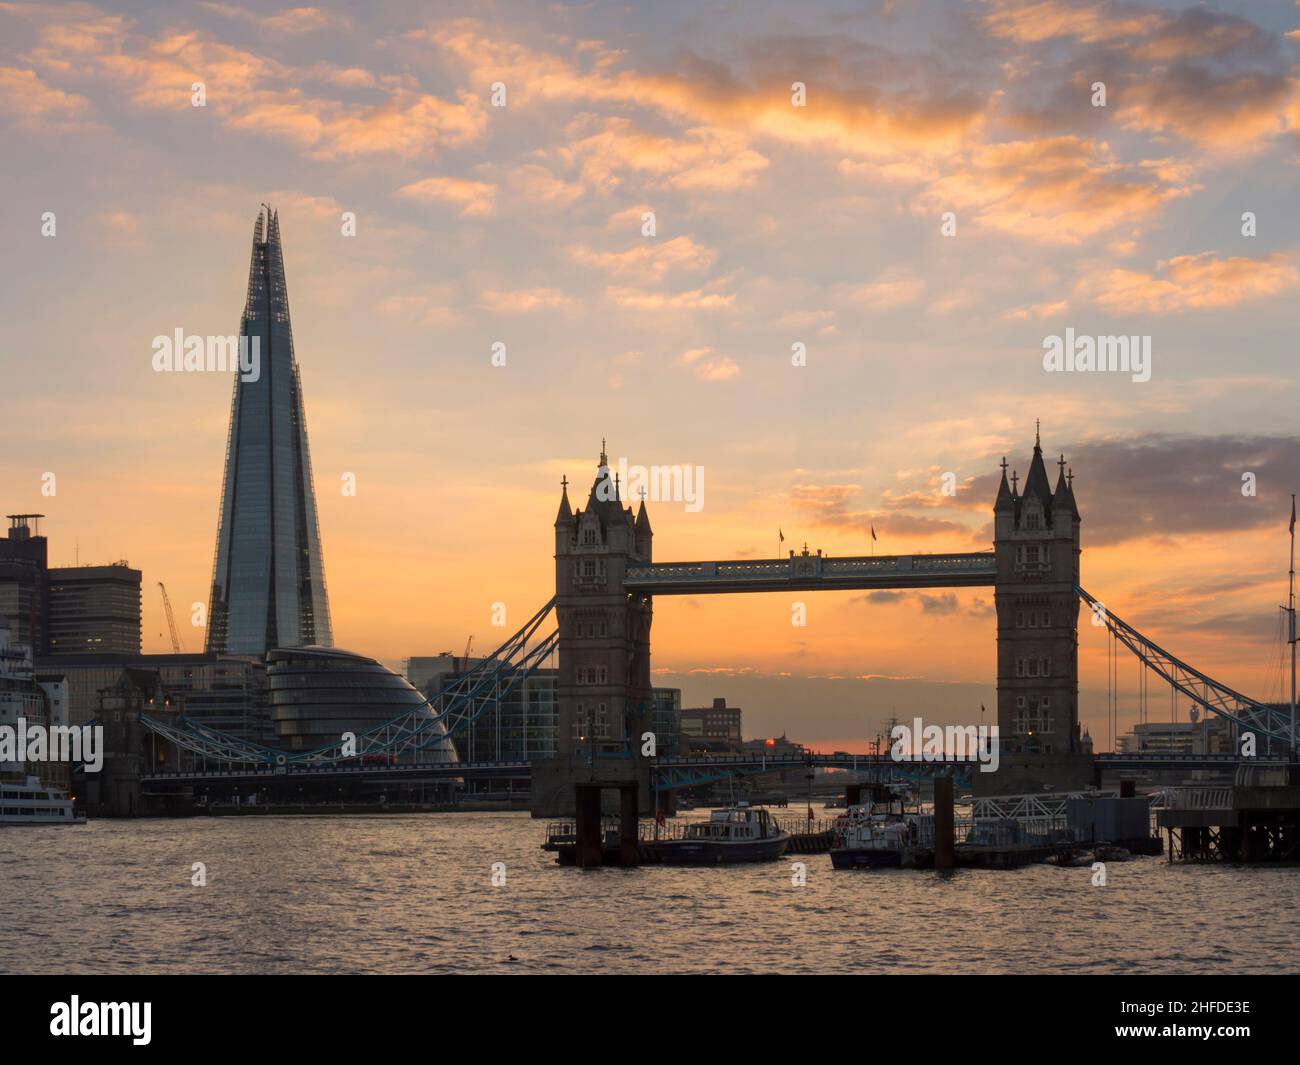 Europe, UK, England, London, Tower Bridge sunset Stock Photo